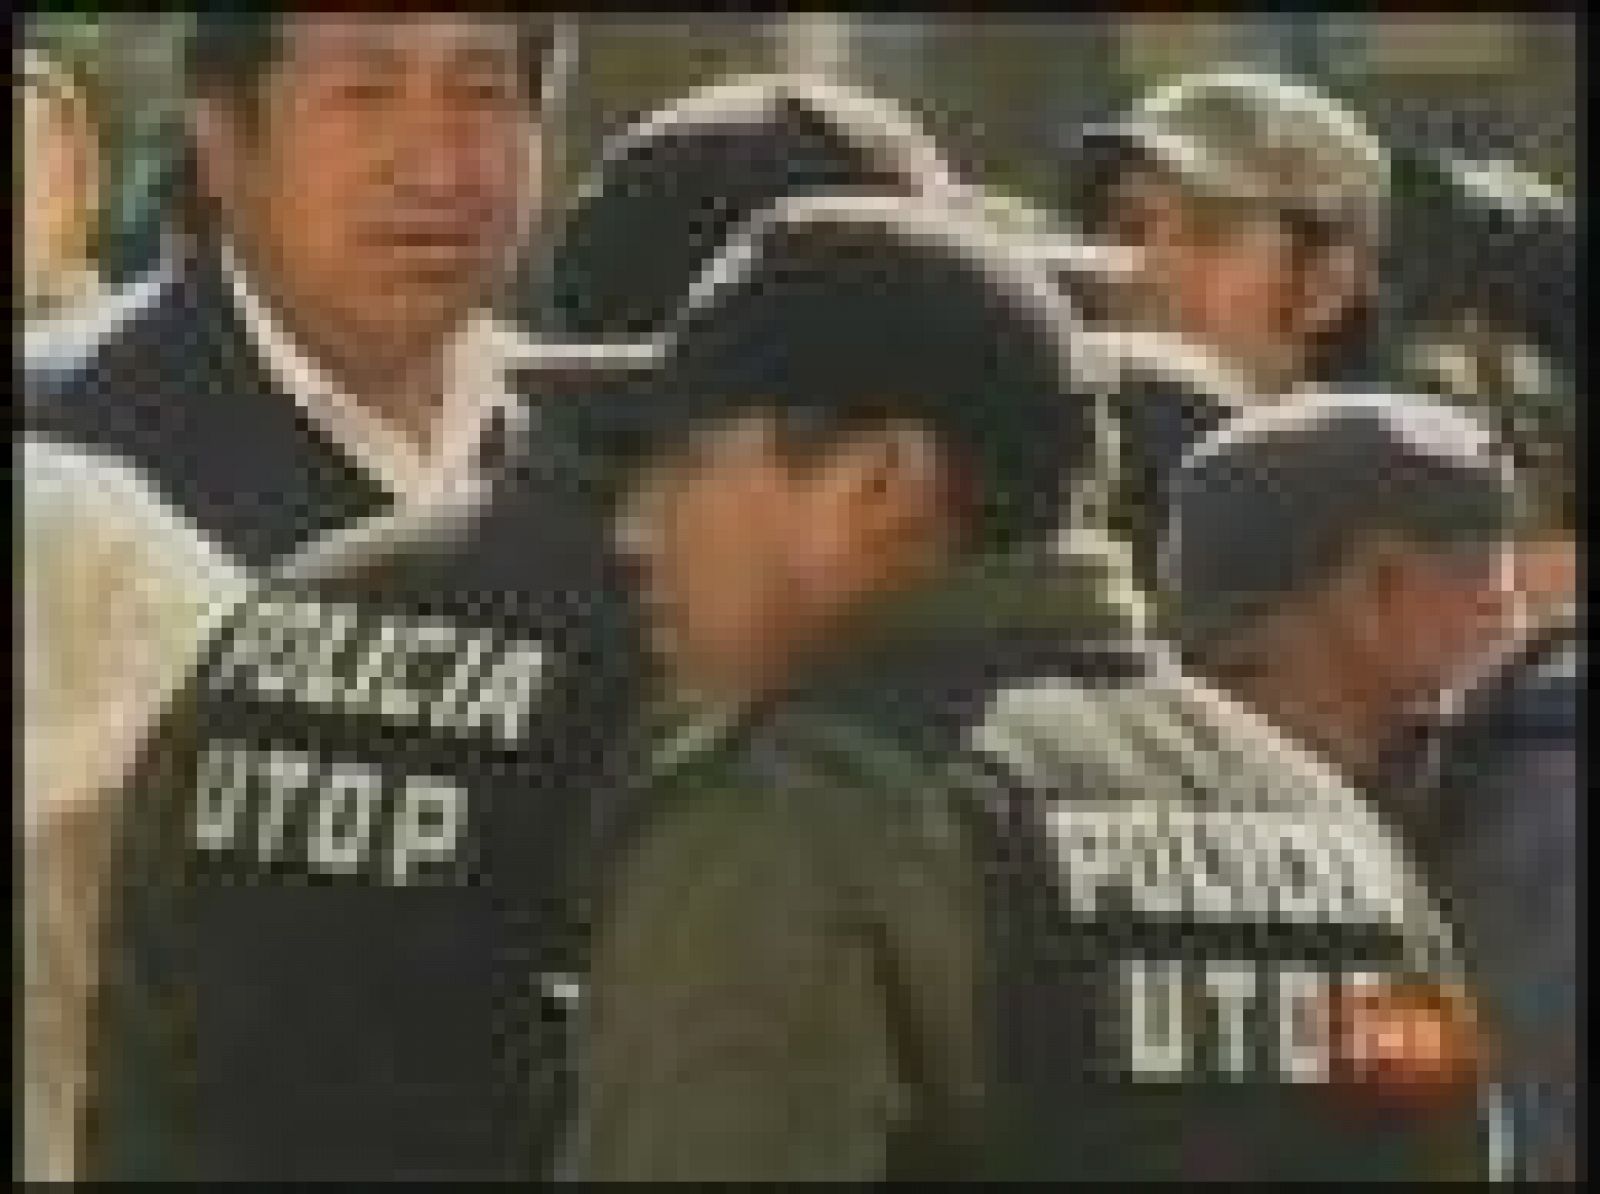  Al menos ocho personas perdieron la vida en un choque armado entre opositores y afines al presidente Evo Morales ocurrido en el norte de Bolivia, informó el Gobierno, que no descartó que la cifra pueda ser mayor (12/09/08). 